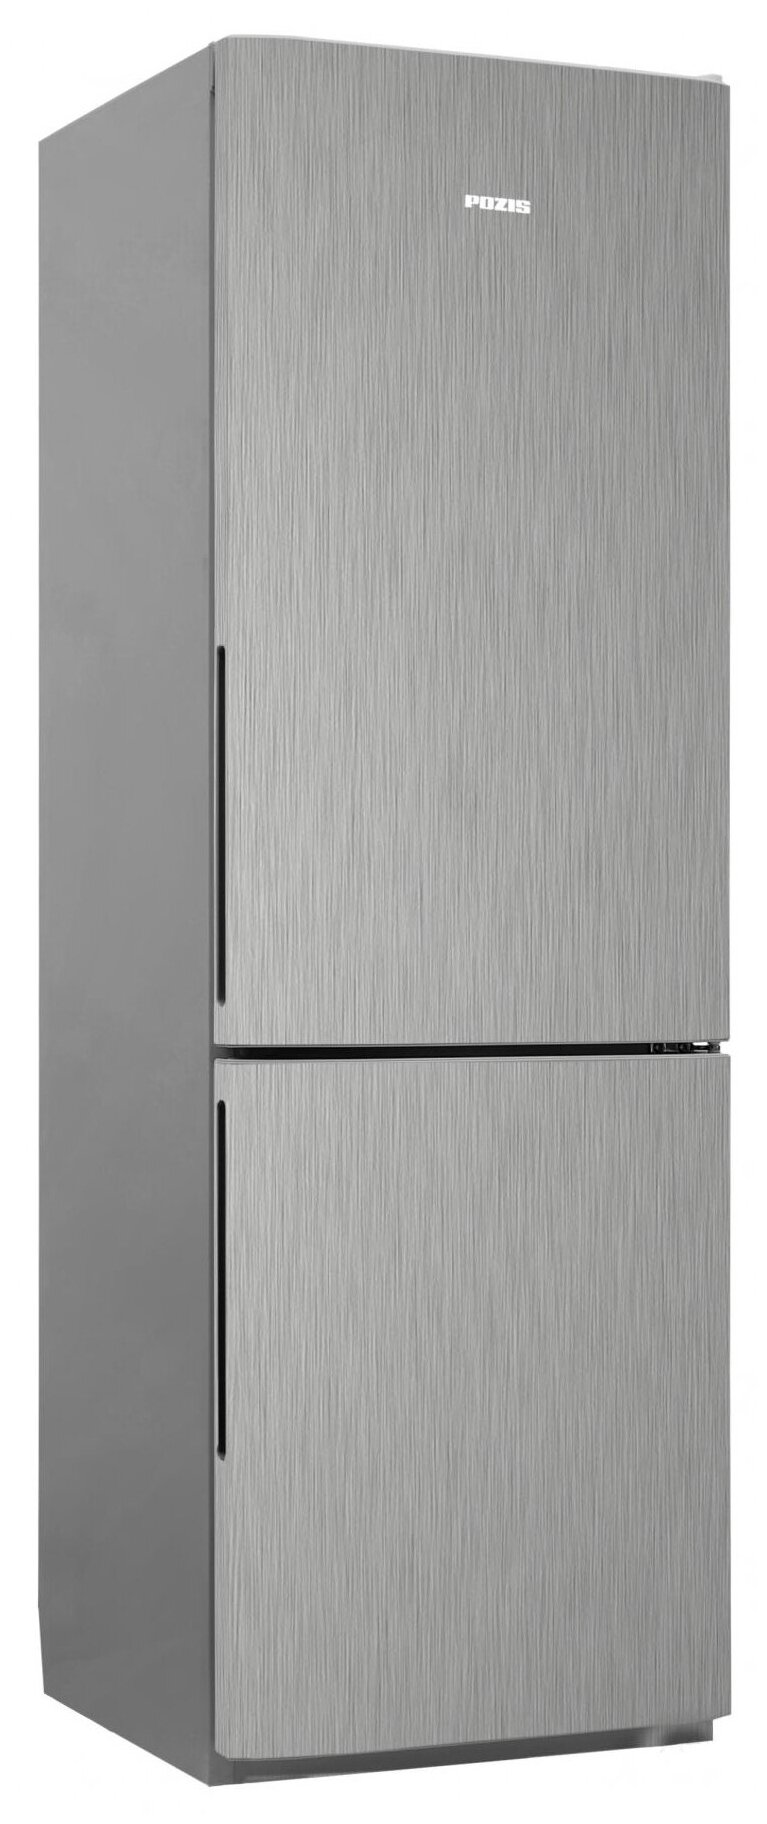 Холодильник Pozis RK FNF-170 s+ серебристый металлопласт ручки вертикальные